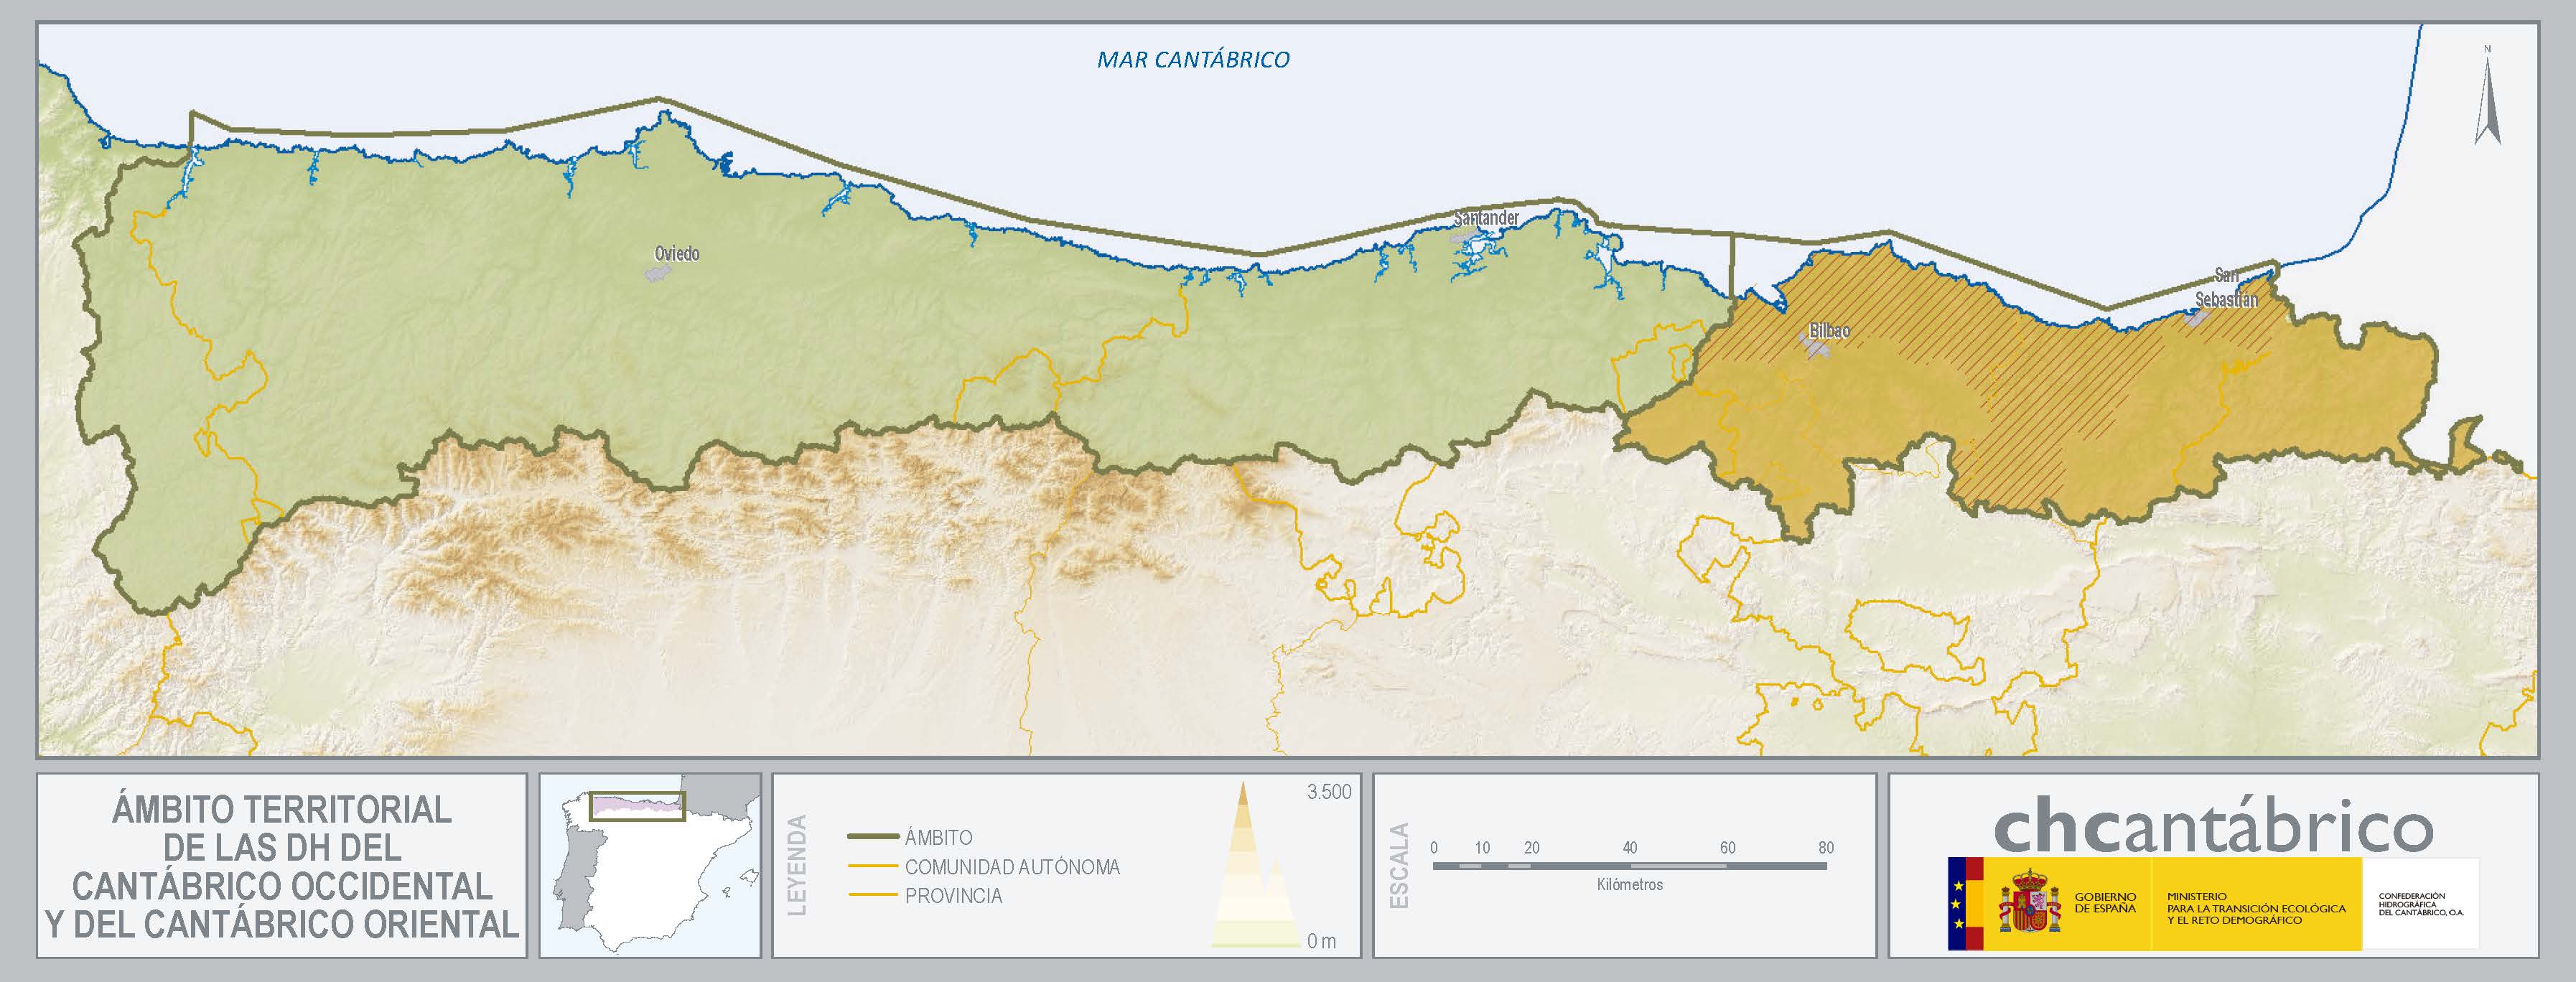 Mapa del ámbito territorial de la CHC por demarcaciones hidrográficas